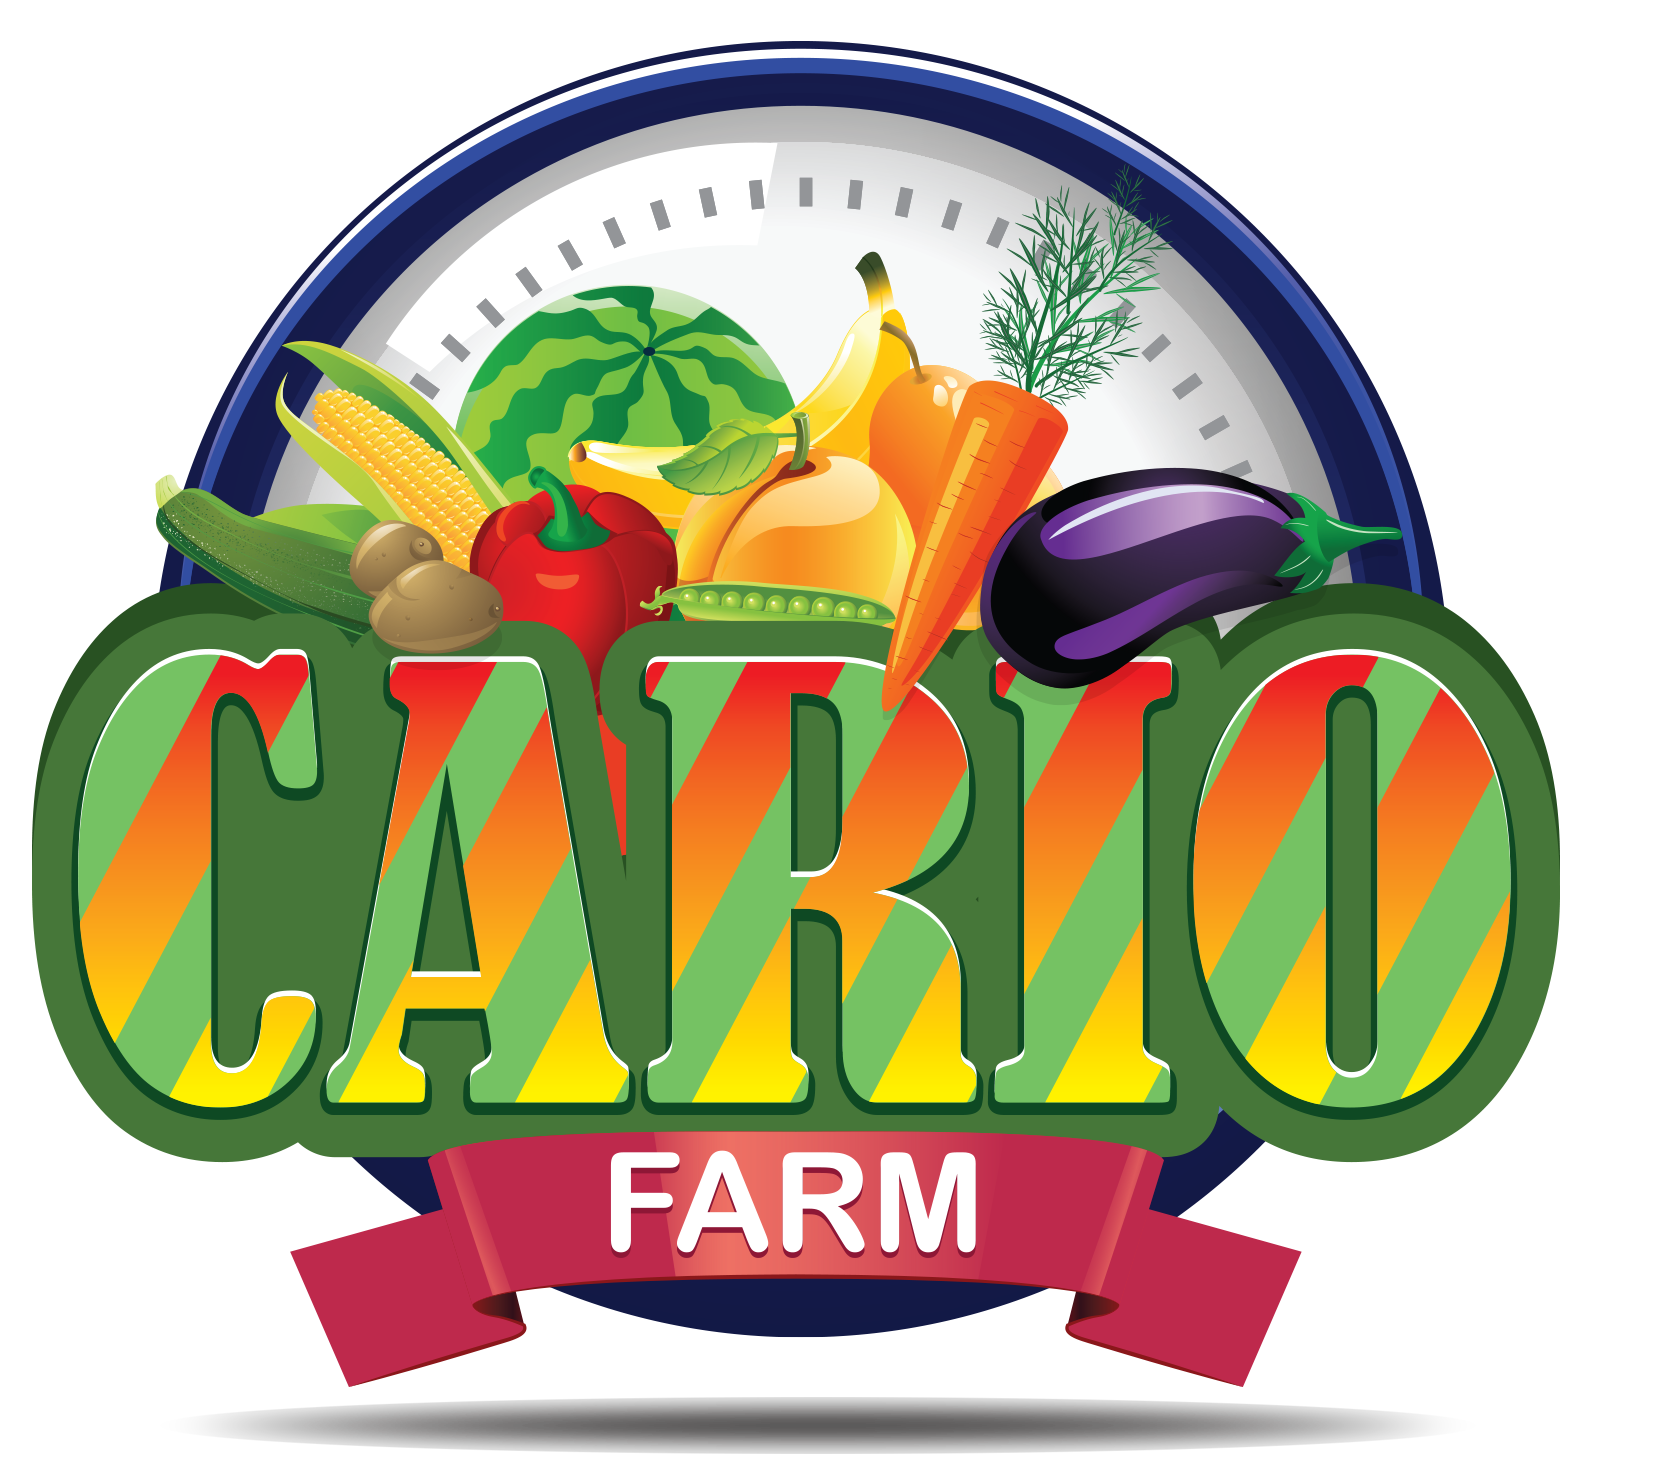 Cario Farm